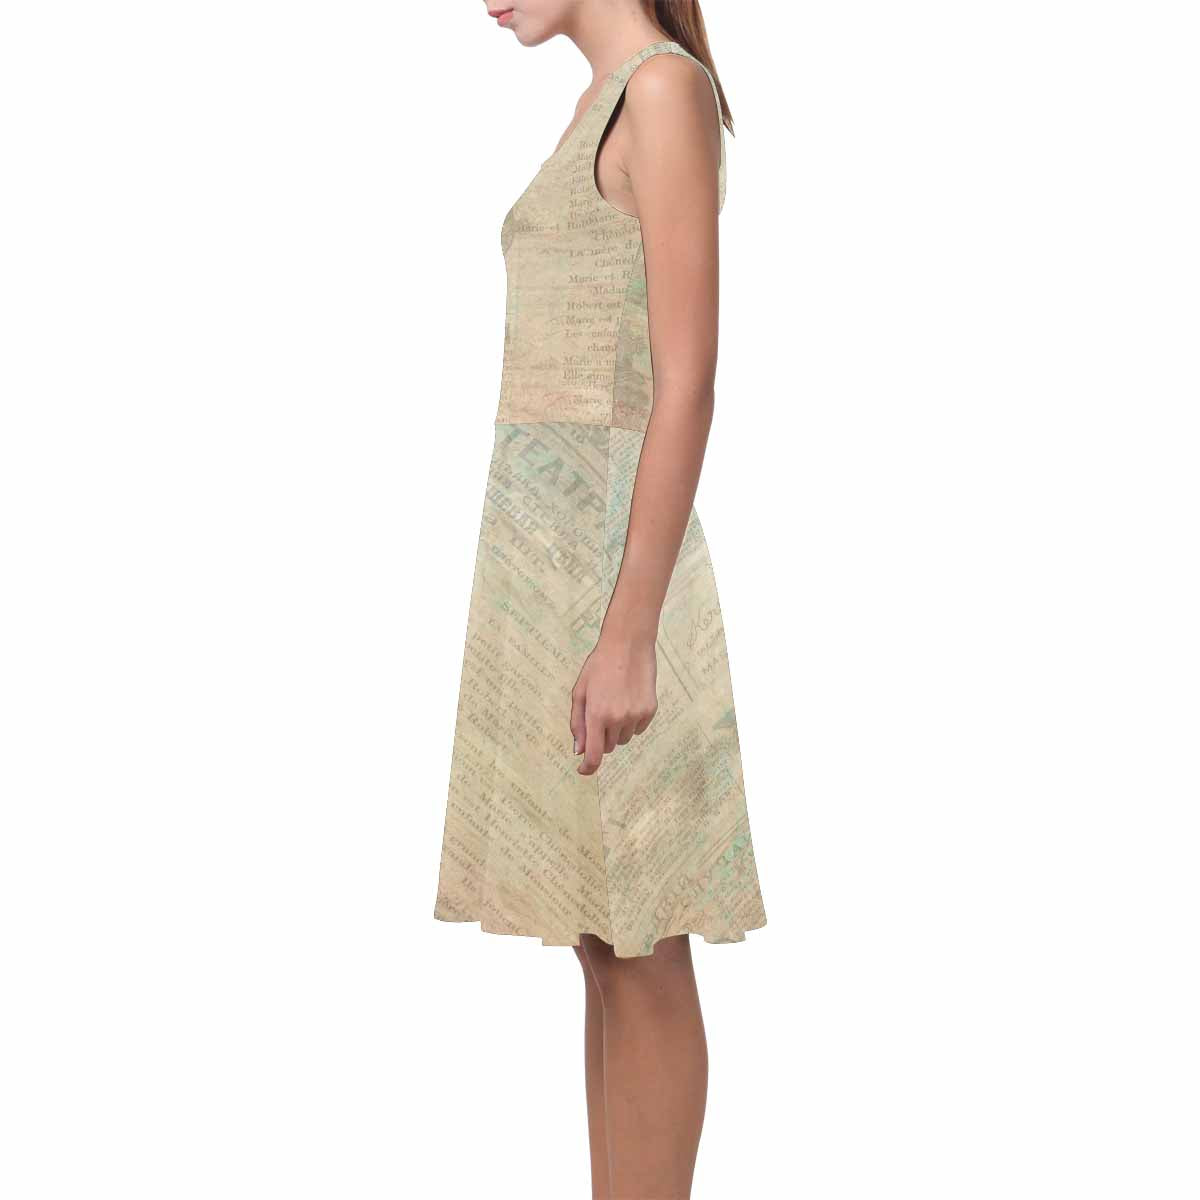 Antique General summer dress, MODEL 09534, design 24